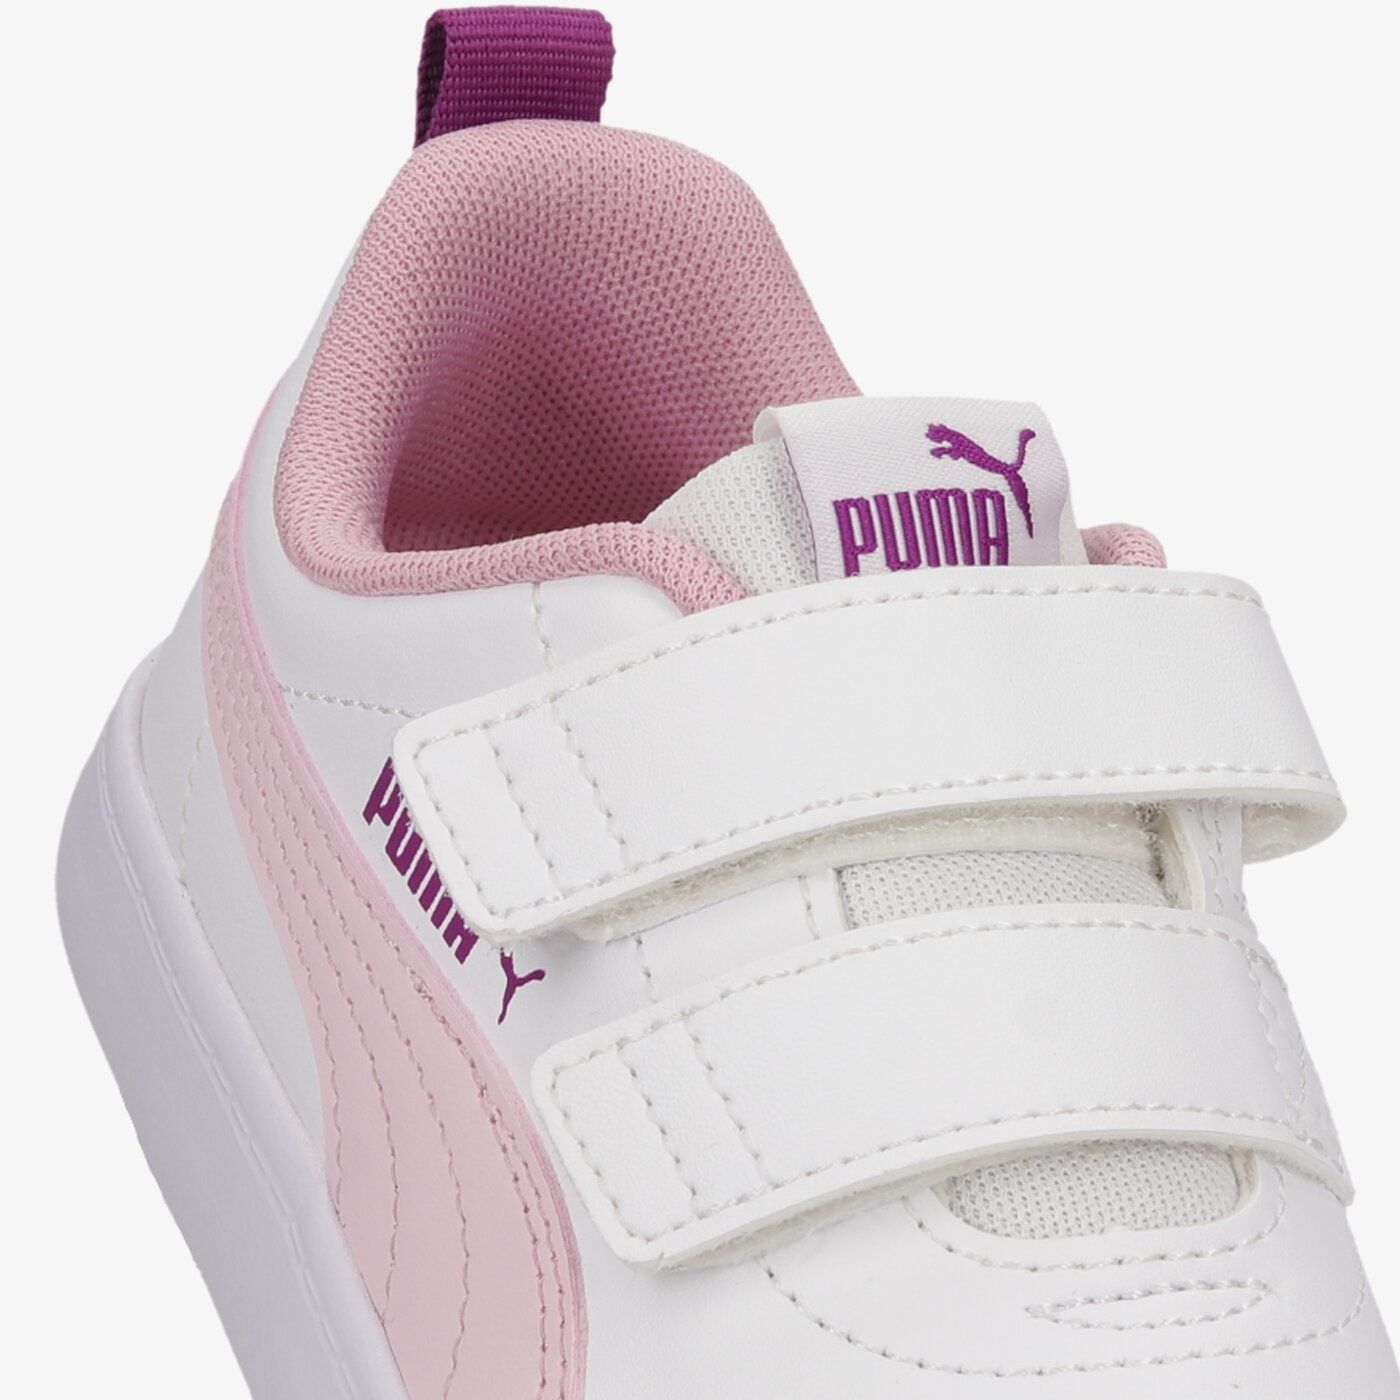 Puma 31 wkładka 19,2 białe, różowe. Adidasy.